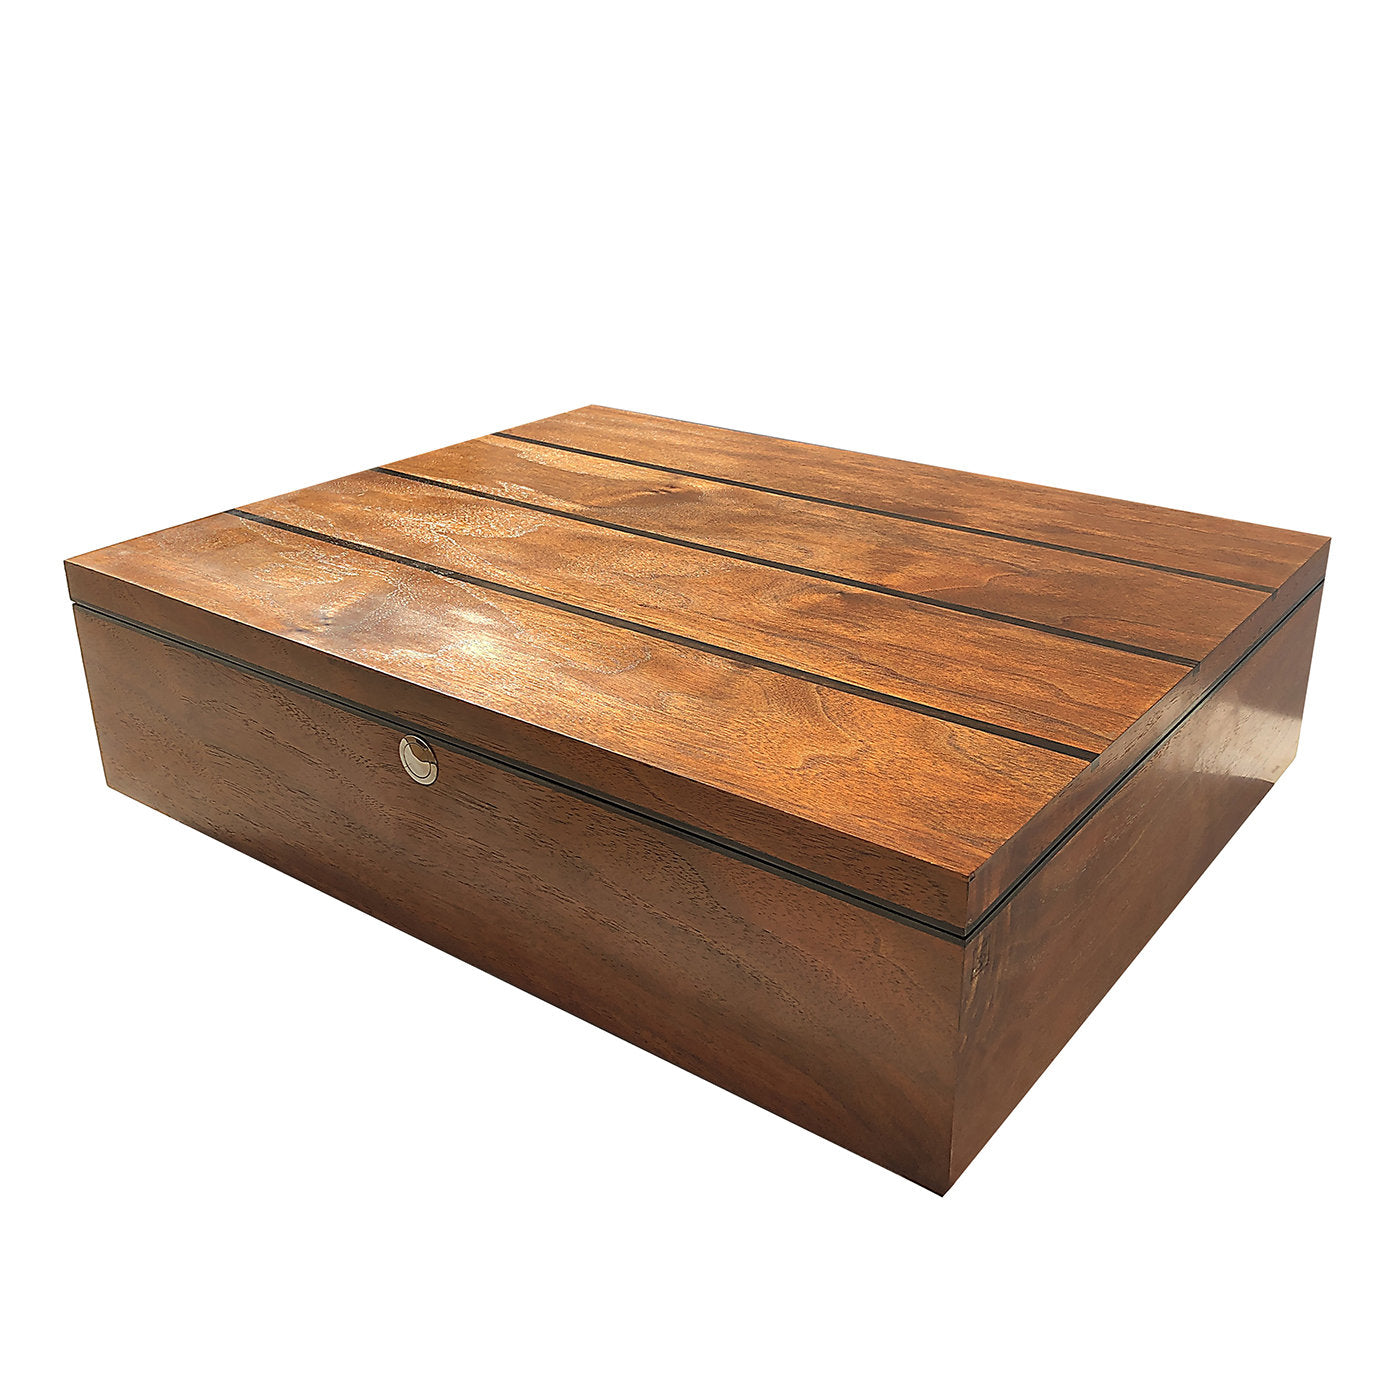 Walnut Wood Box - Alternative view 2